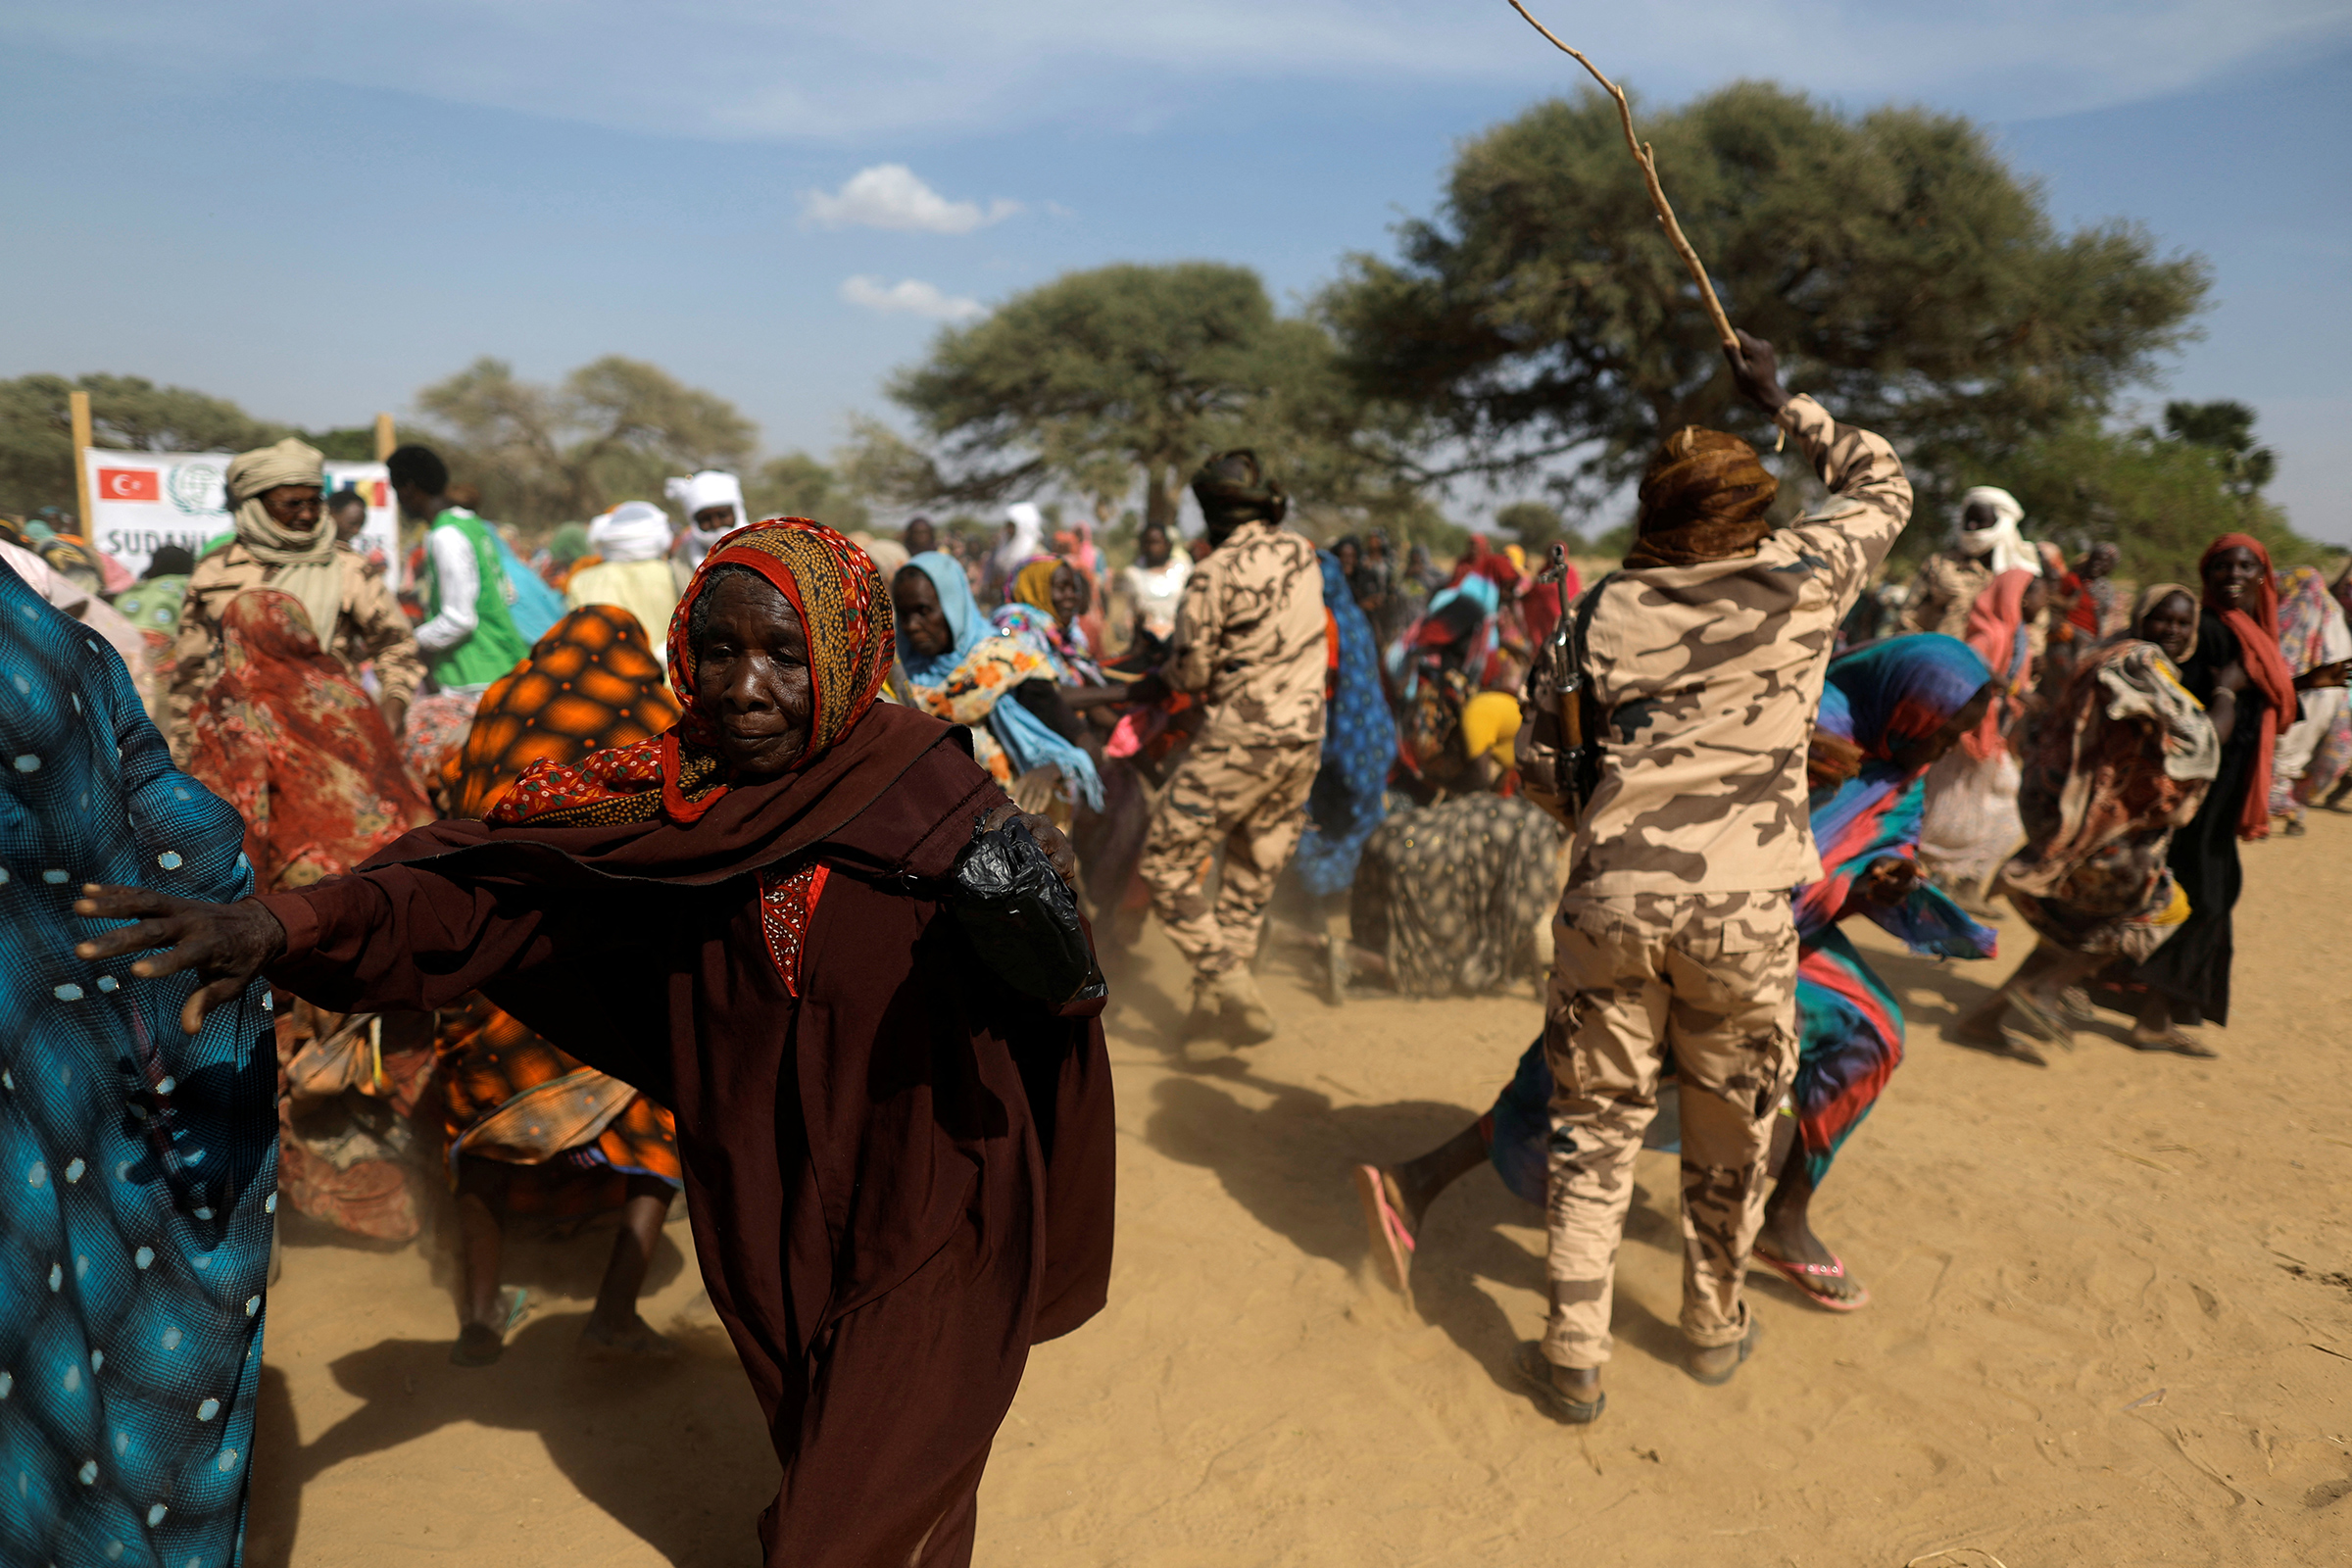 Ülkelerindeki şiddet olaylarından kaçan ve çaresizce gıda dağıtımını bekleyen Sudanlı mülteci kadınlar, Türk yardım örgütünün (İHH) getirdiği erzağın tükenmekte olduğunu görünce kendilerini alıkoymaya çalışan askerlerin erzak çantalarını kapmaktan sıyrılıyor. , 7 Mayıs'ta Sudan ve Çad arasındaki sınırın yakınında. (Zohra Bensemra—Reuters)